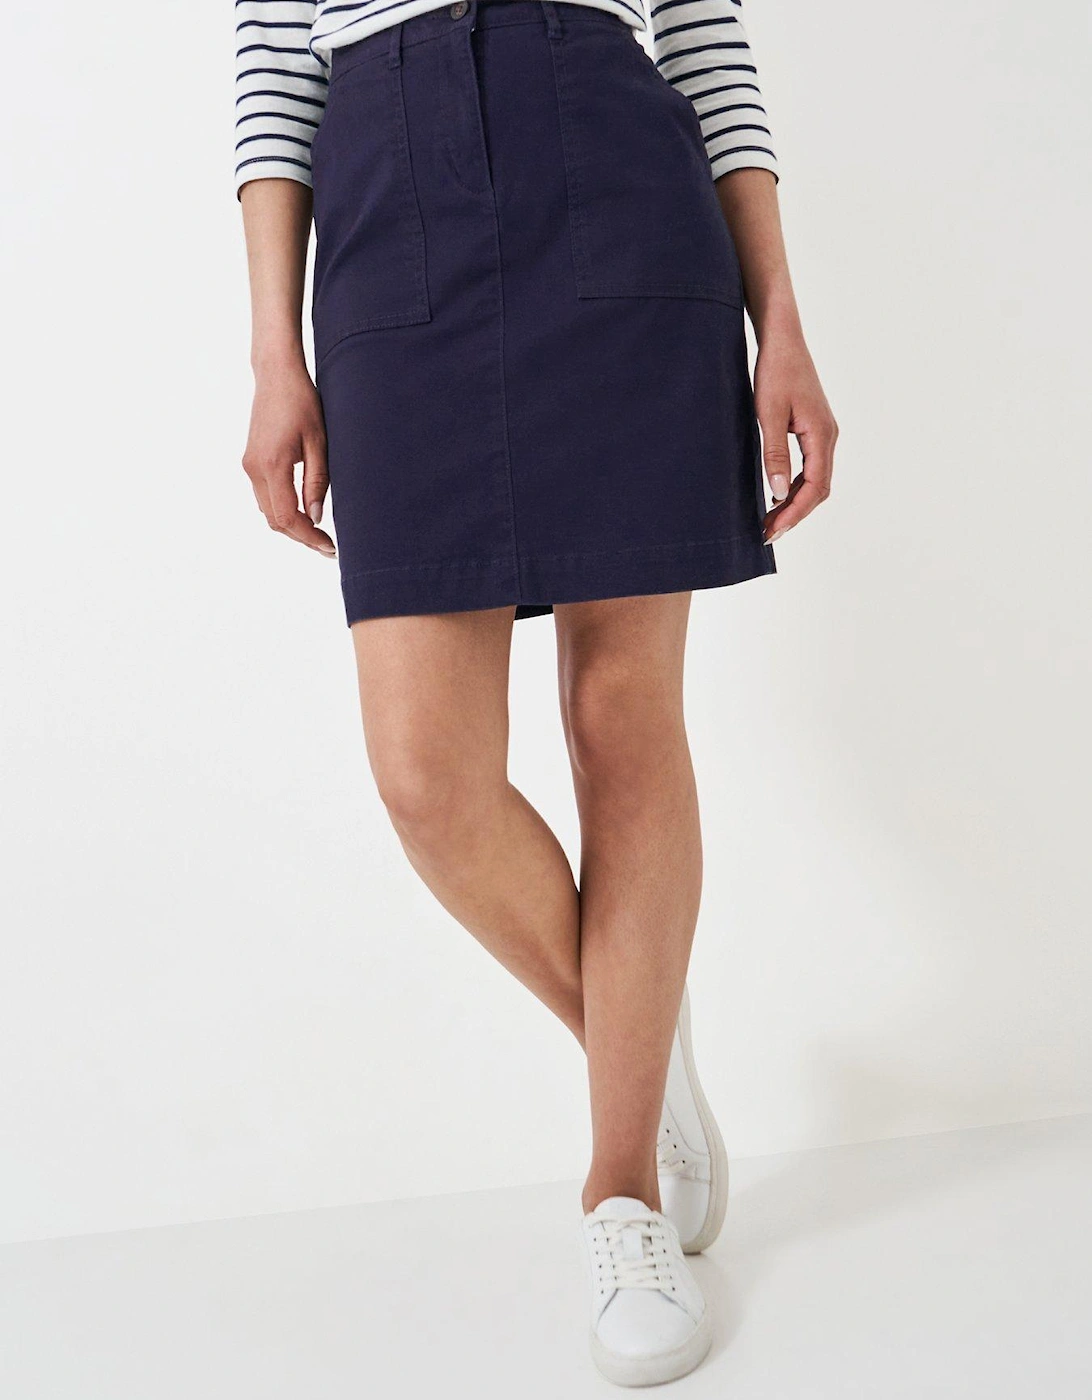 Chino Skirt - Navy, 2 of 1